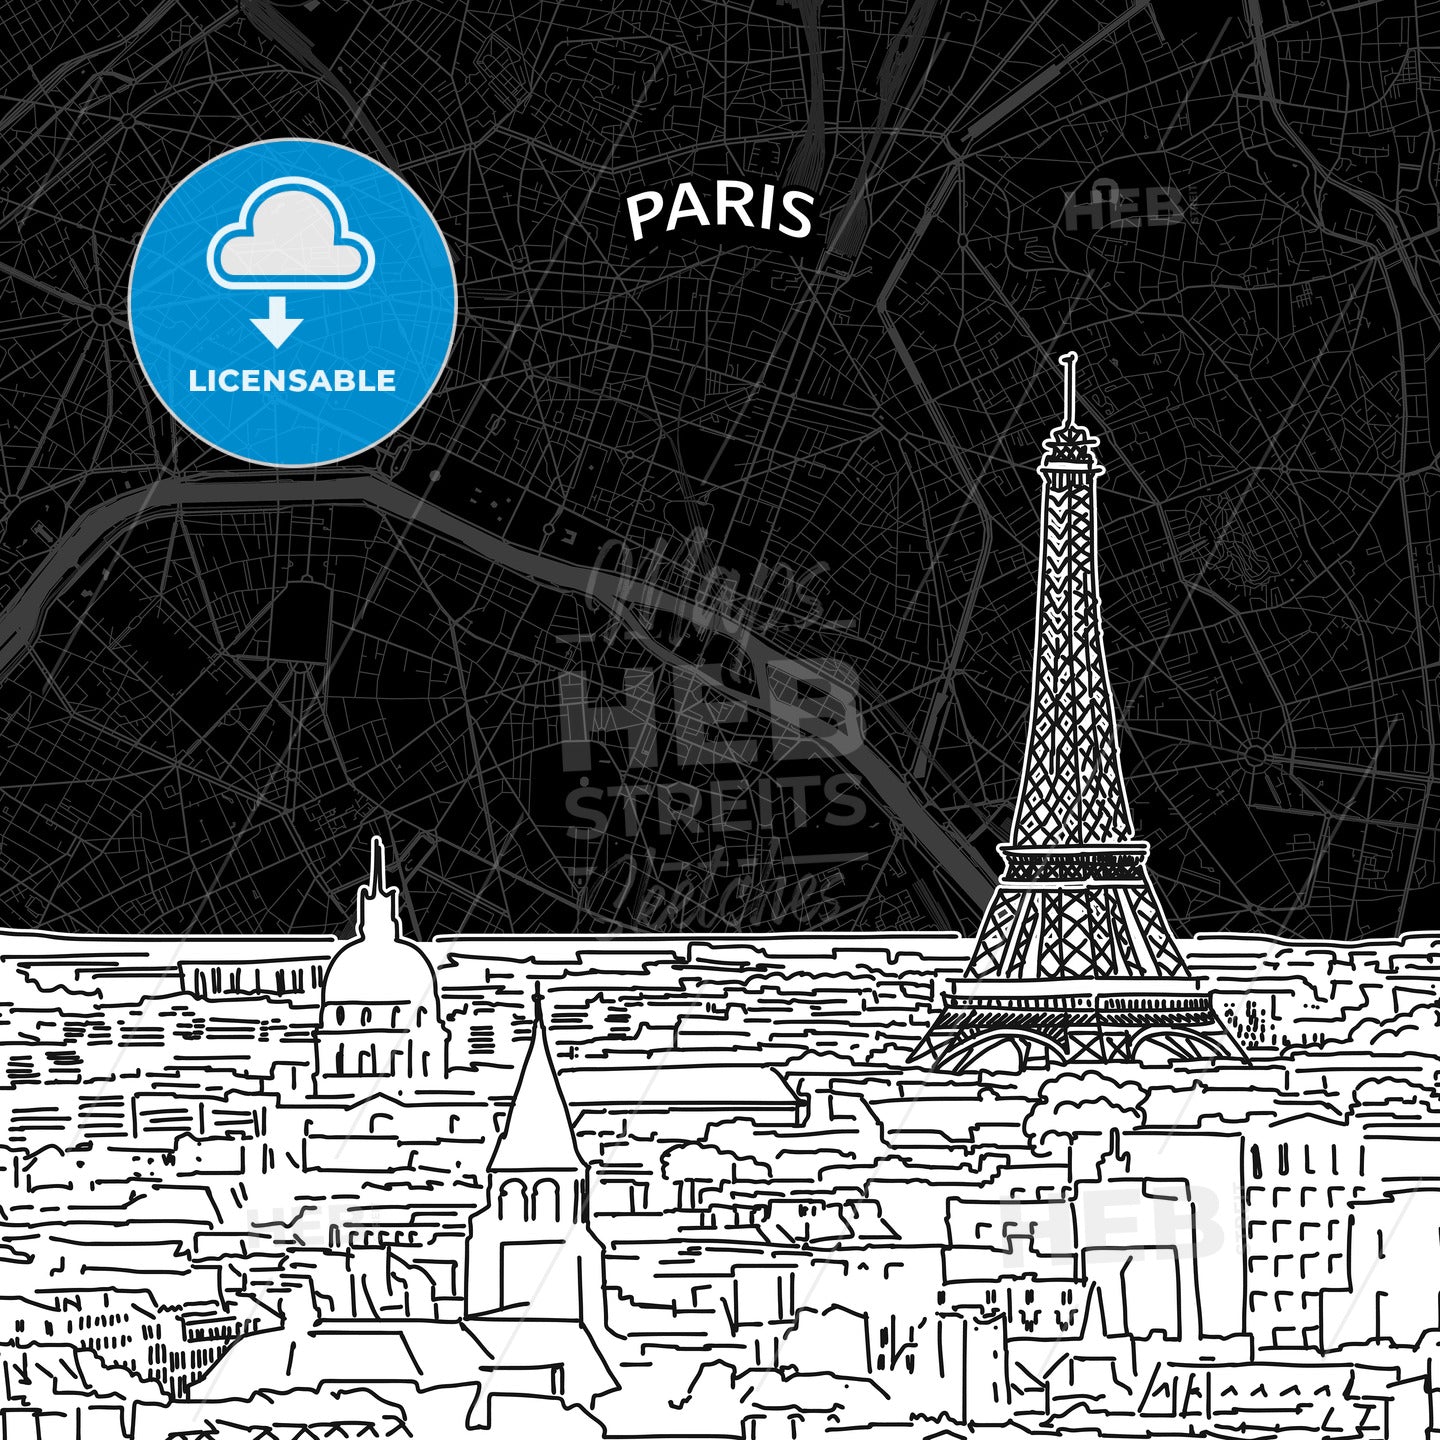 Paris skyline with map